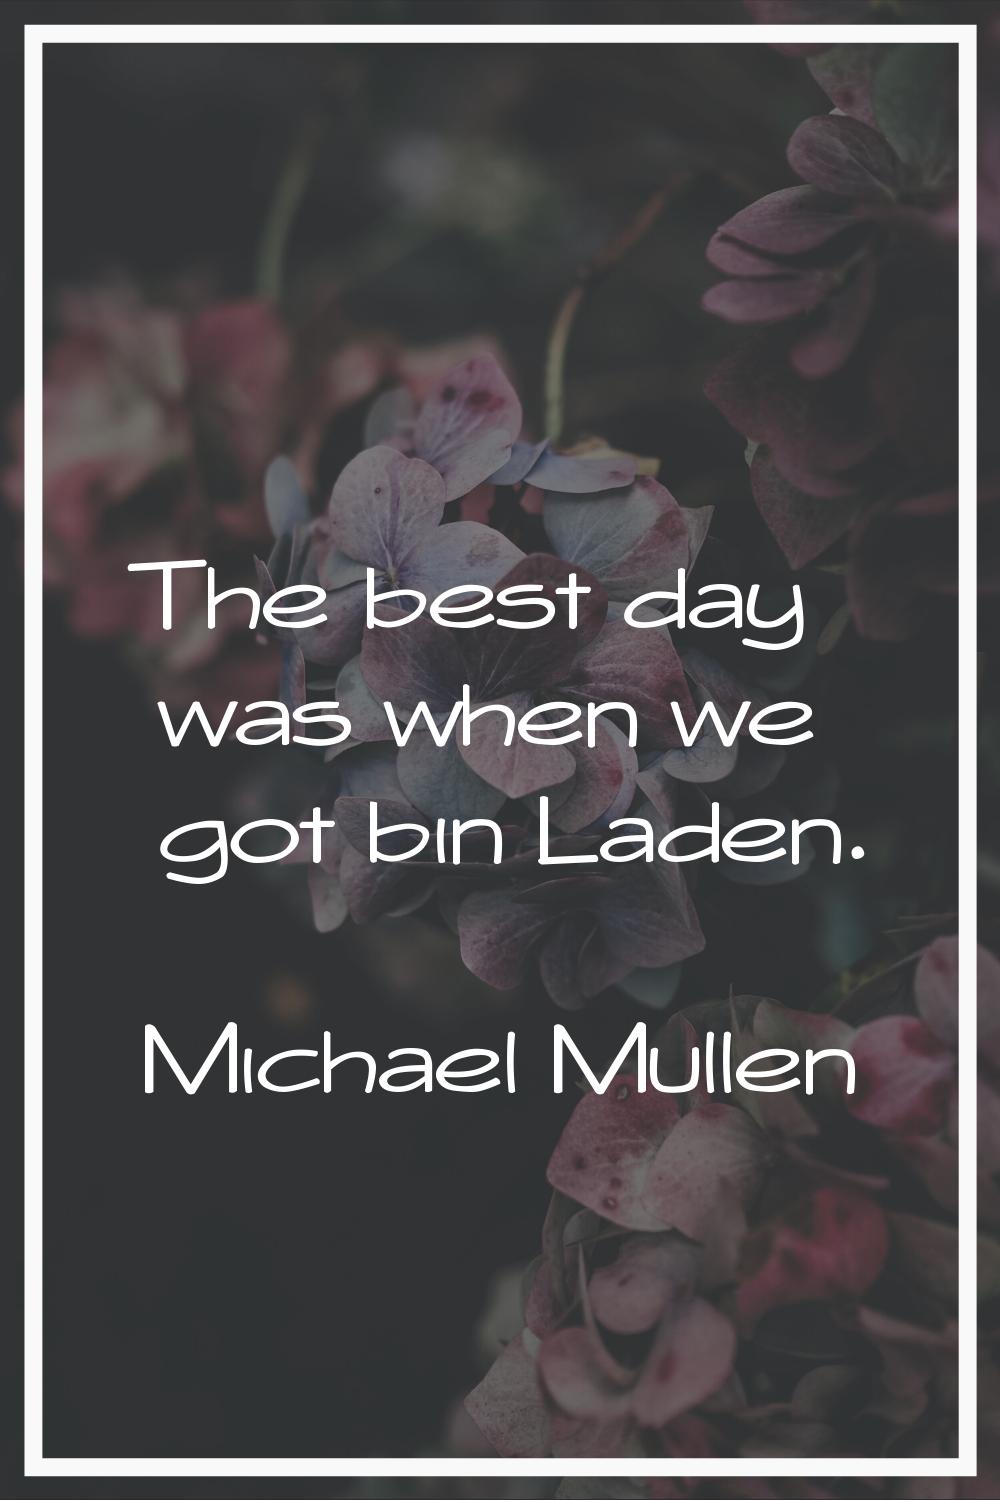 The best day was when we got bin Laden.